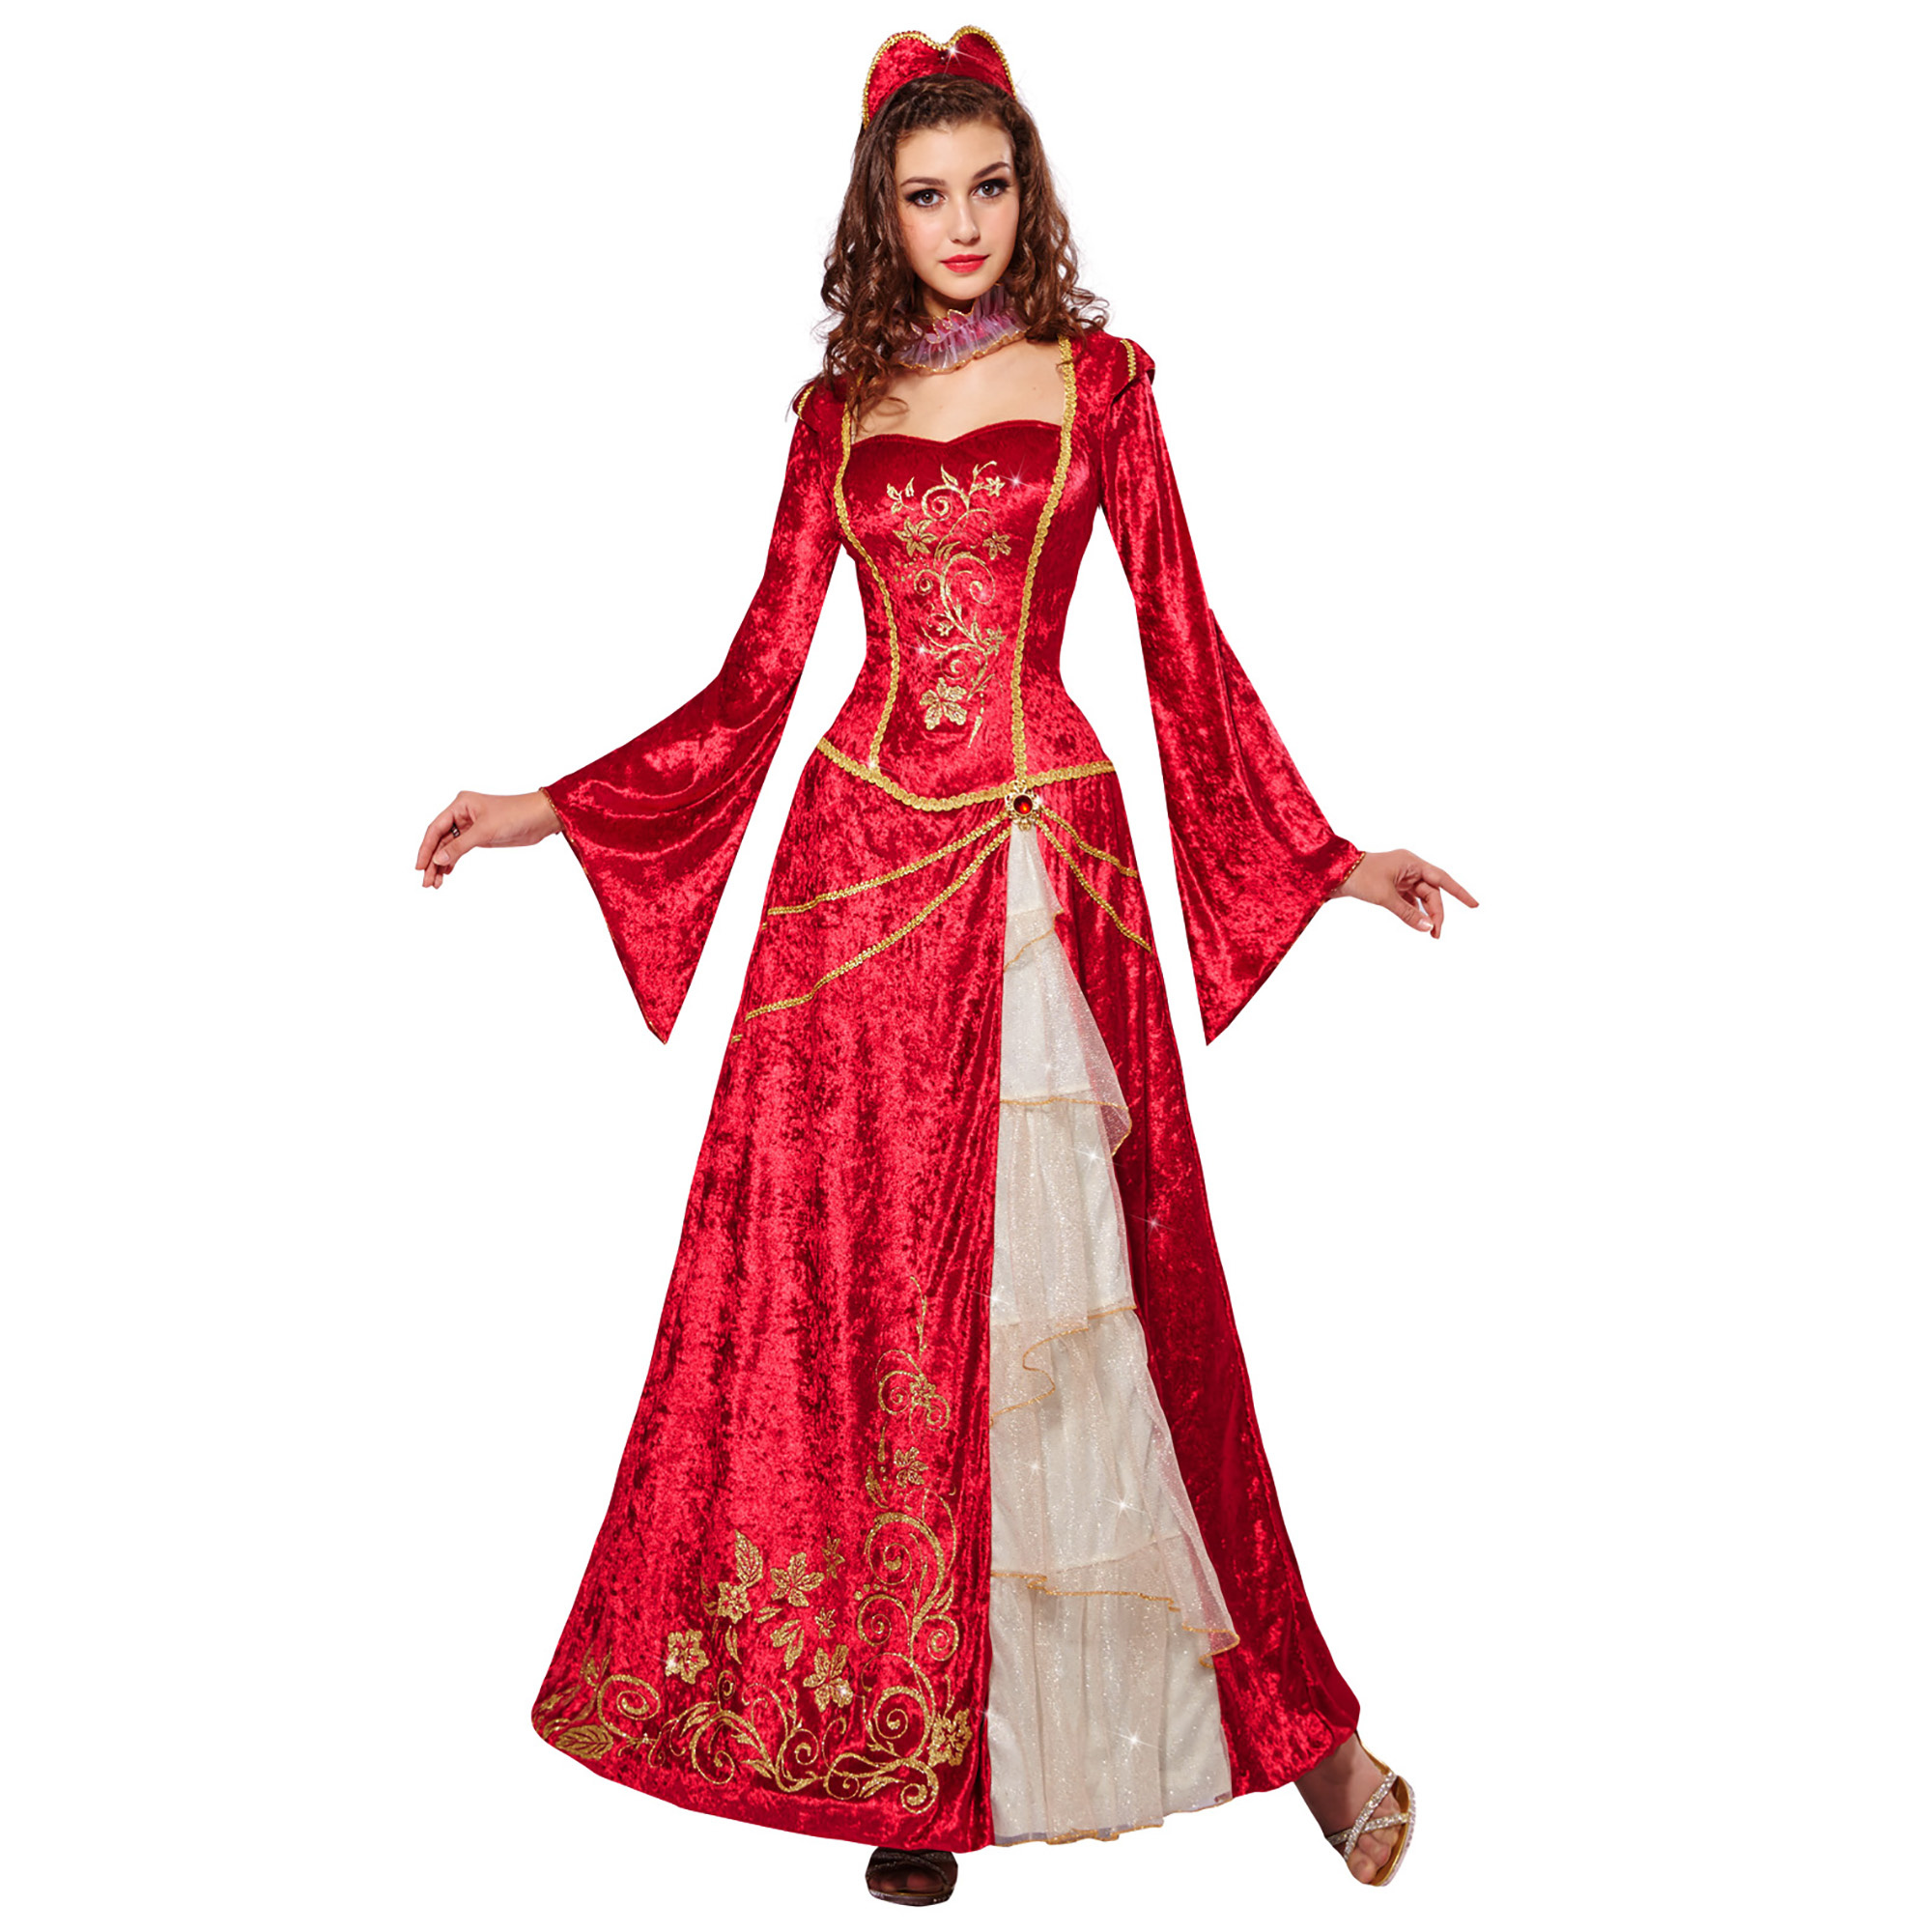 Rood Renaissance prinses kostuum voor vrouwen - Volwassenen kostuums